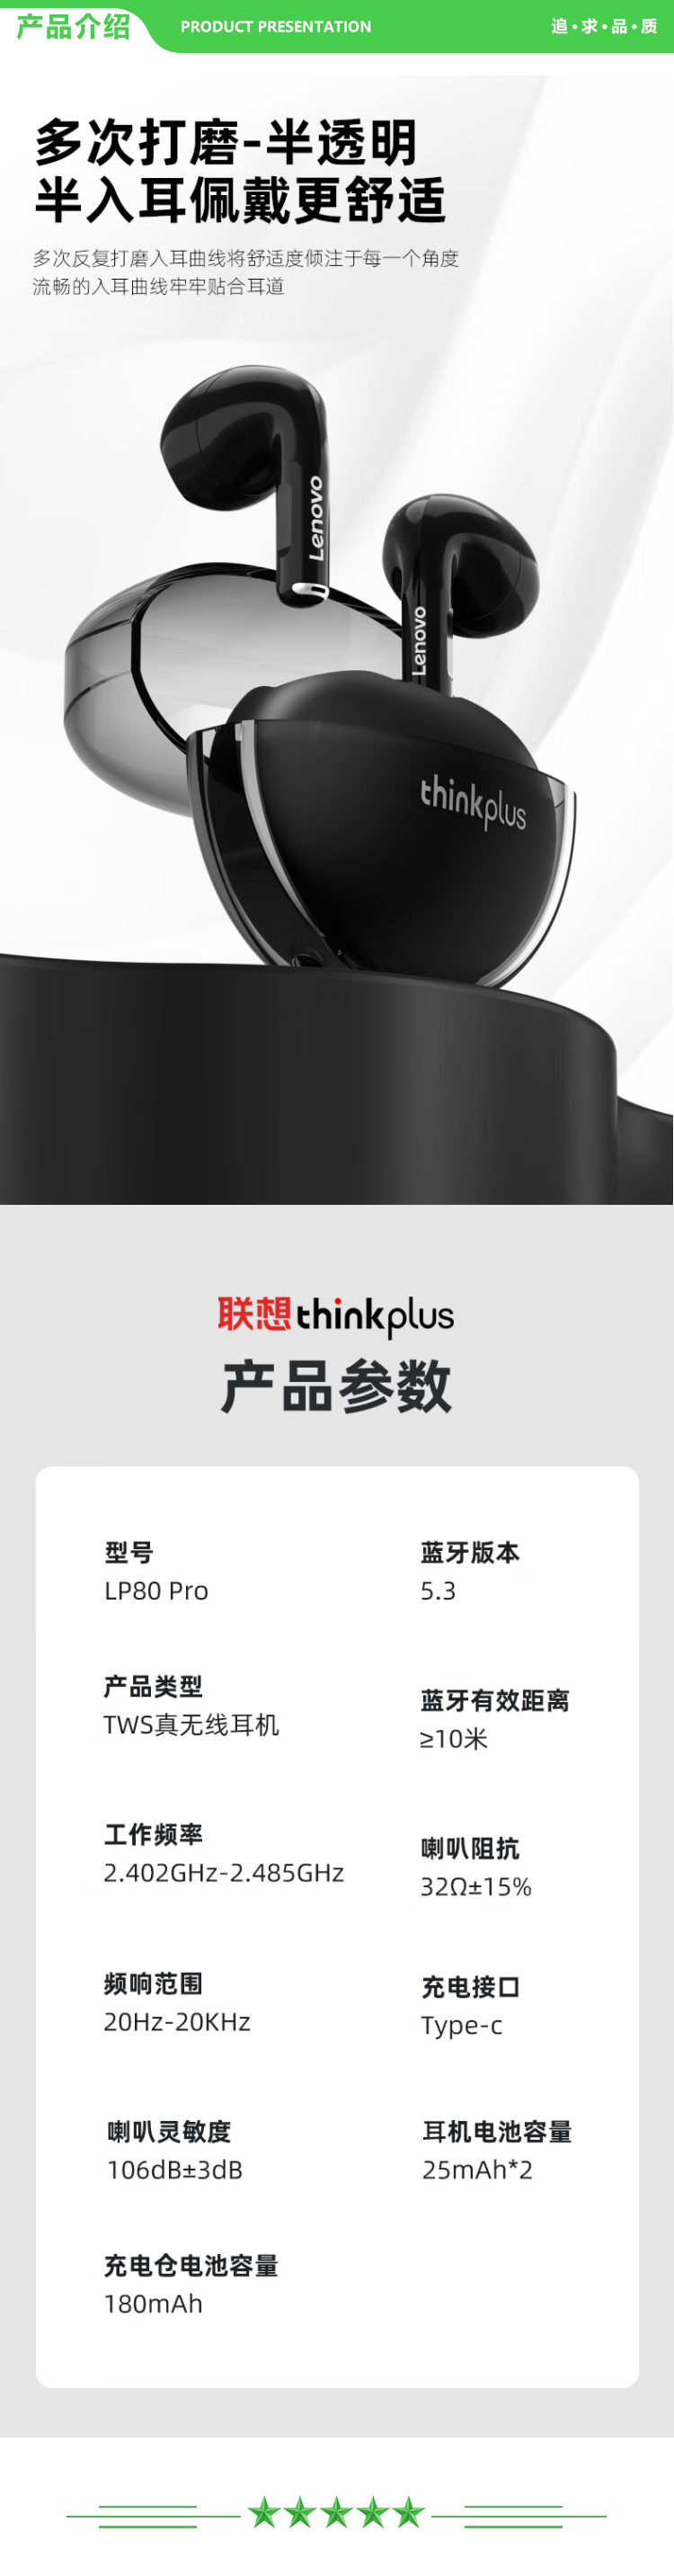 联想 Lenovo LP80Pro 黑色 真无线蓝牙耳机半入耳式降噪游戏吃鸡低延迟音乐耳机 适用苹果华为小米OPPO手机 .jpg